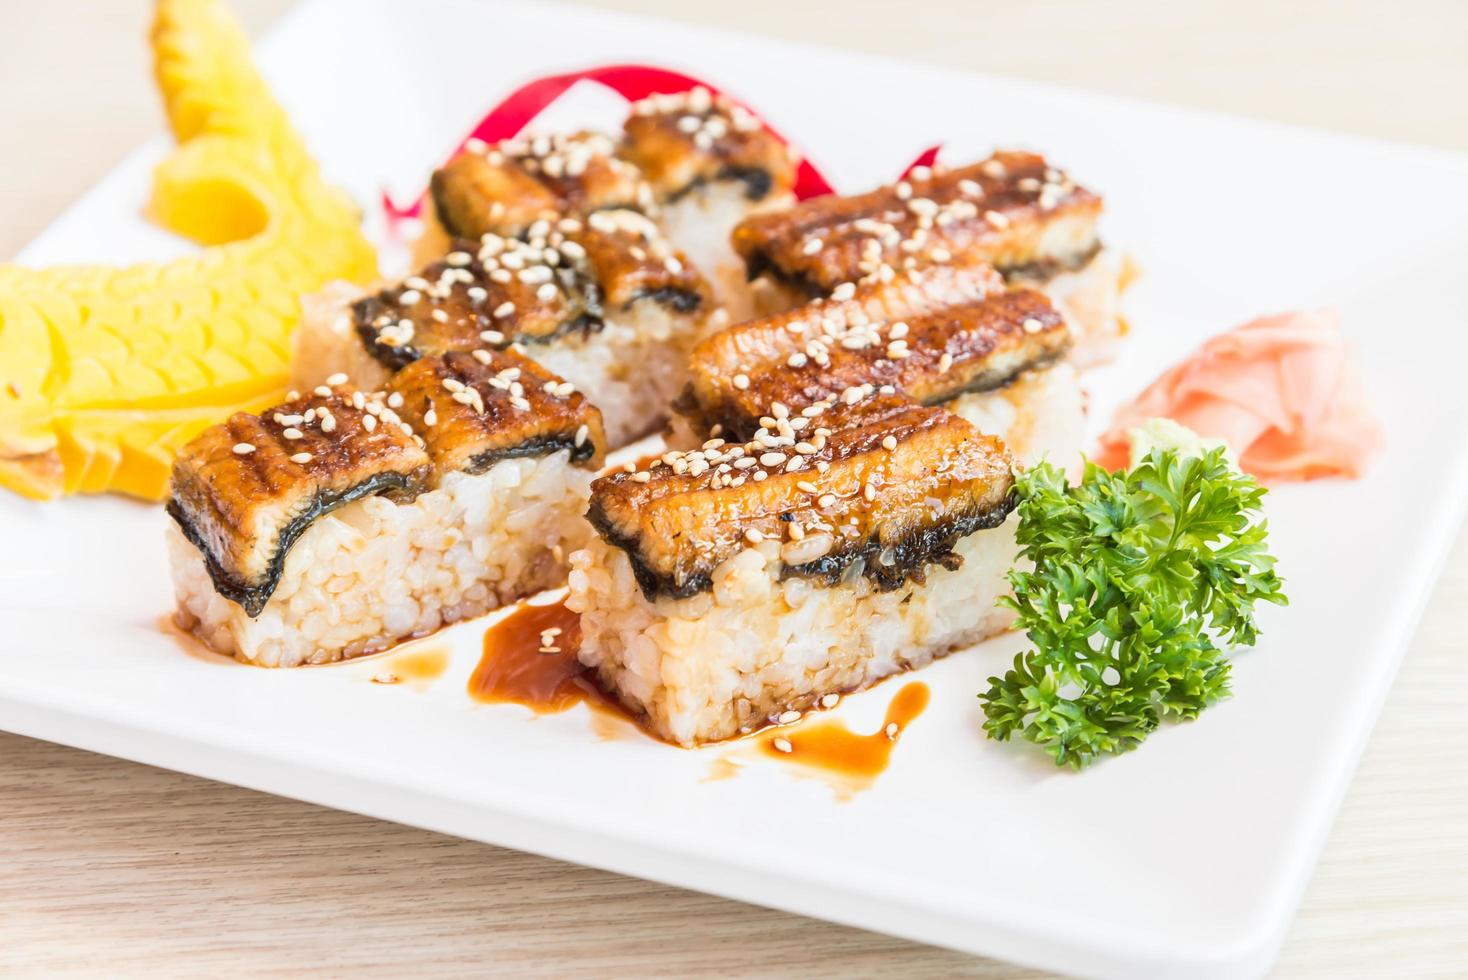 paling sushi roll maki foto